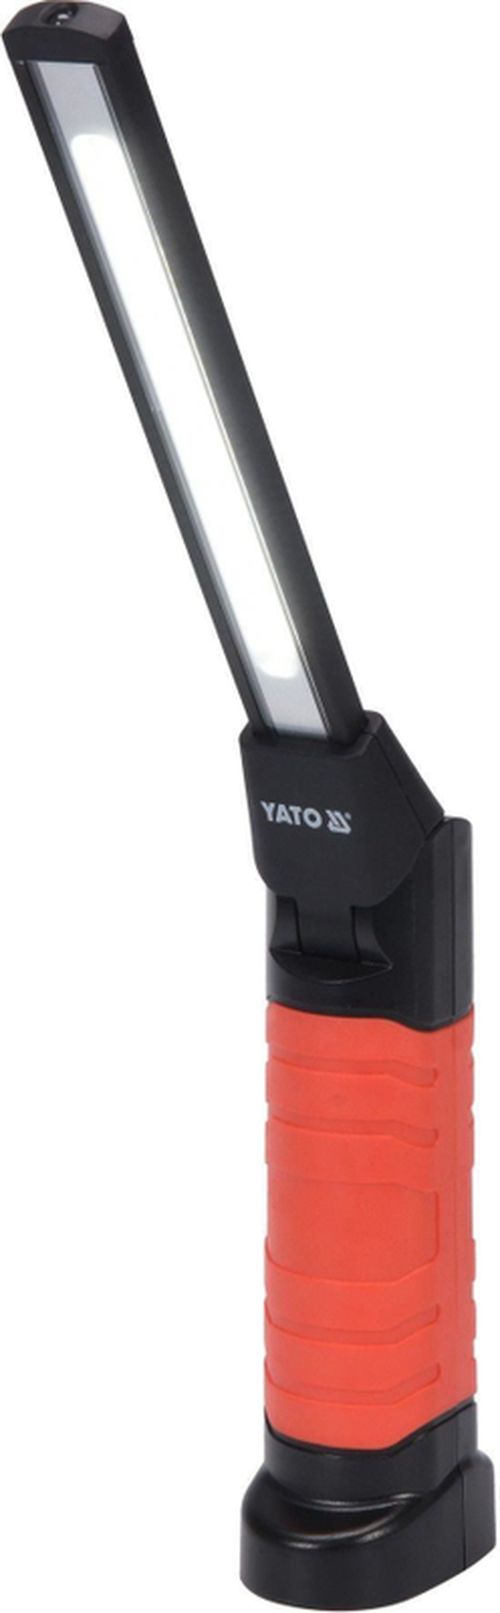 купить Освещение строительное Yato YT08518 в Кишинёве 